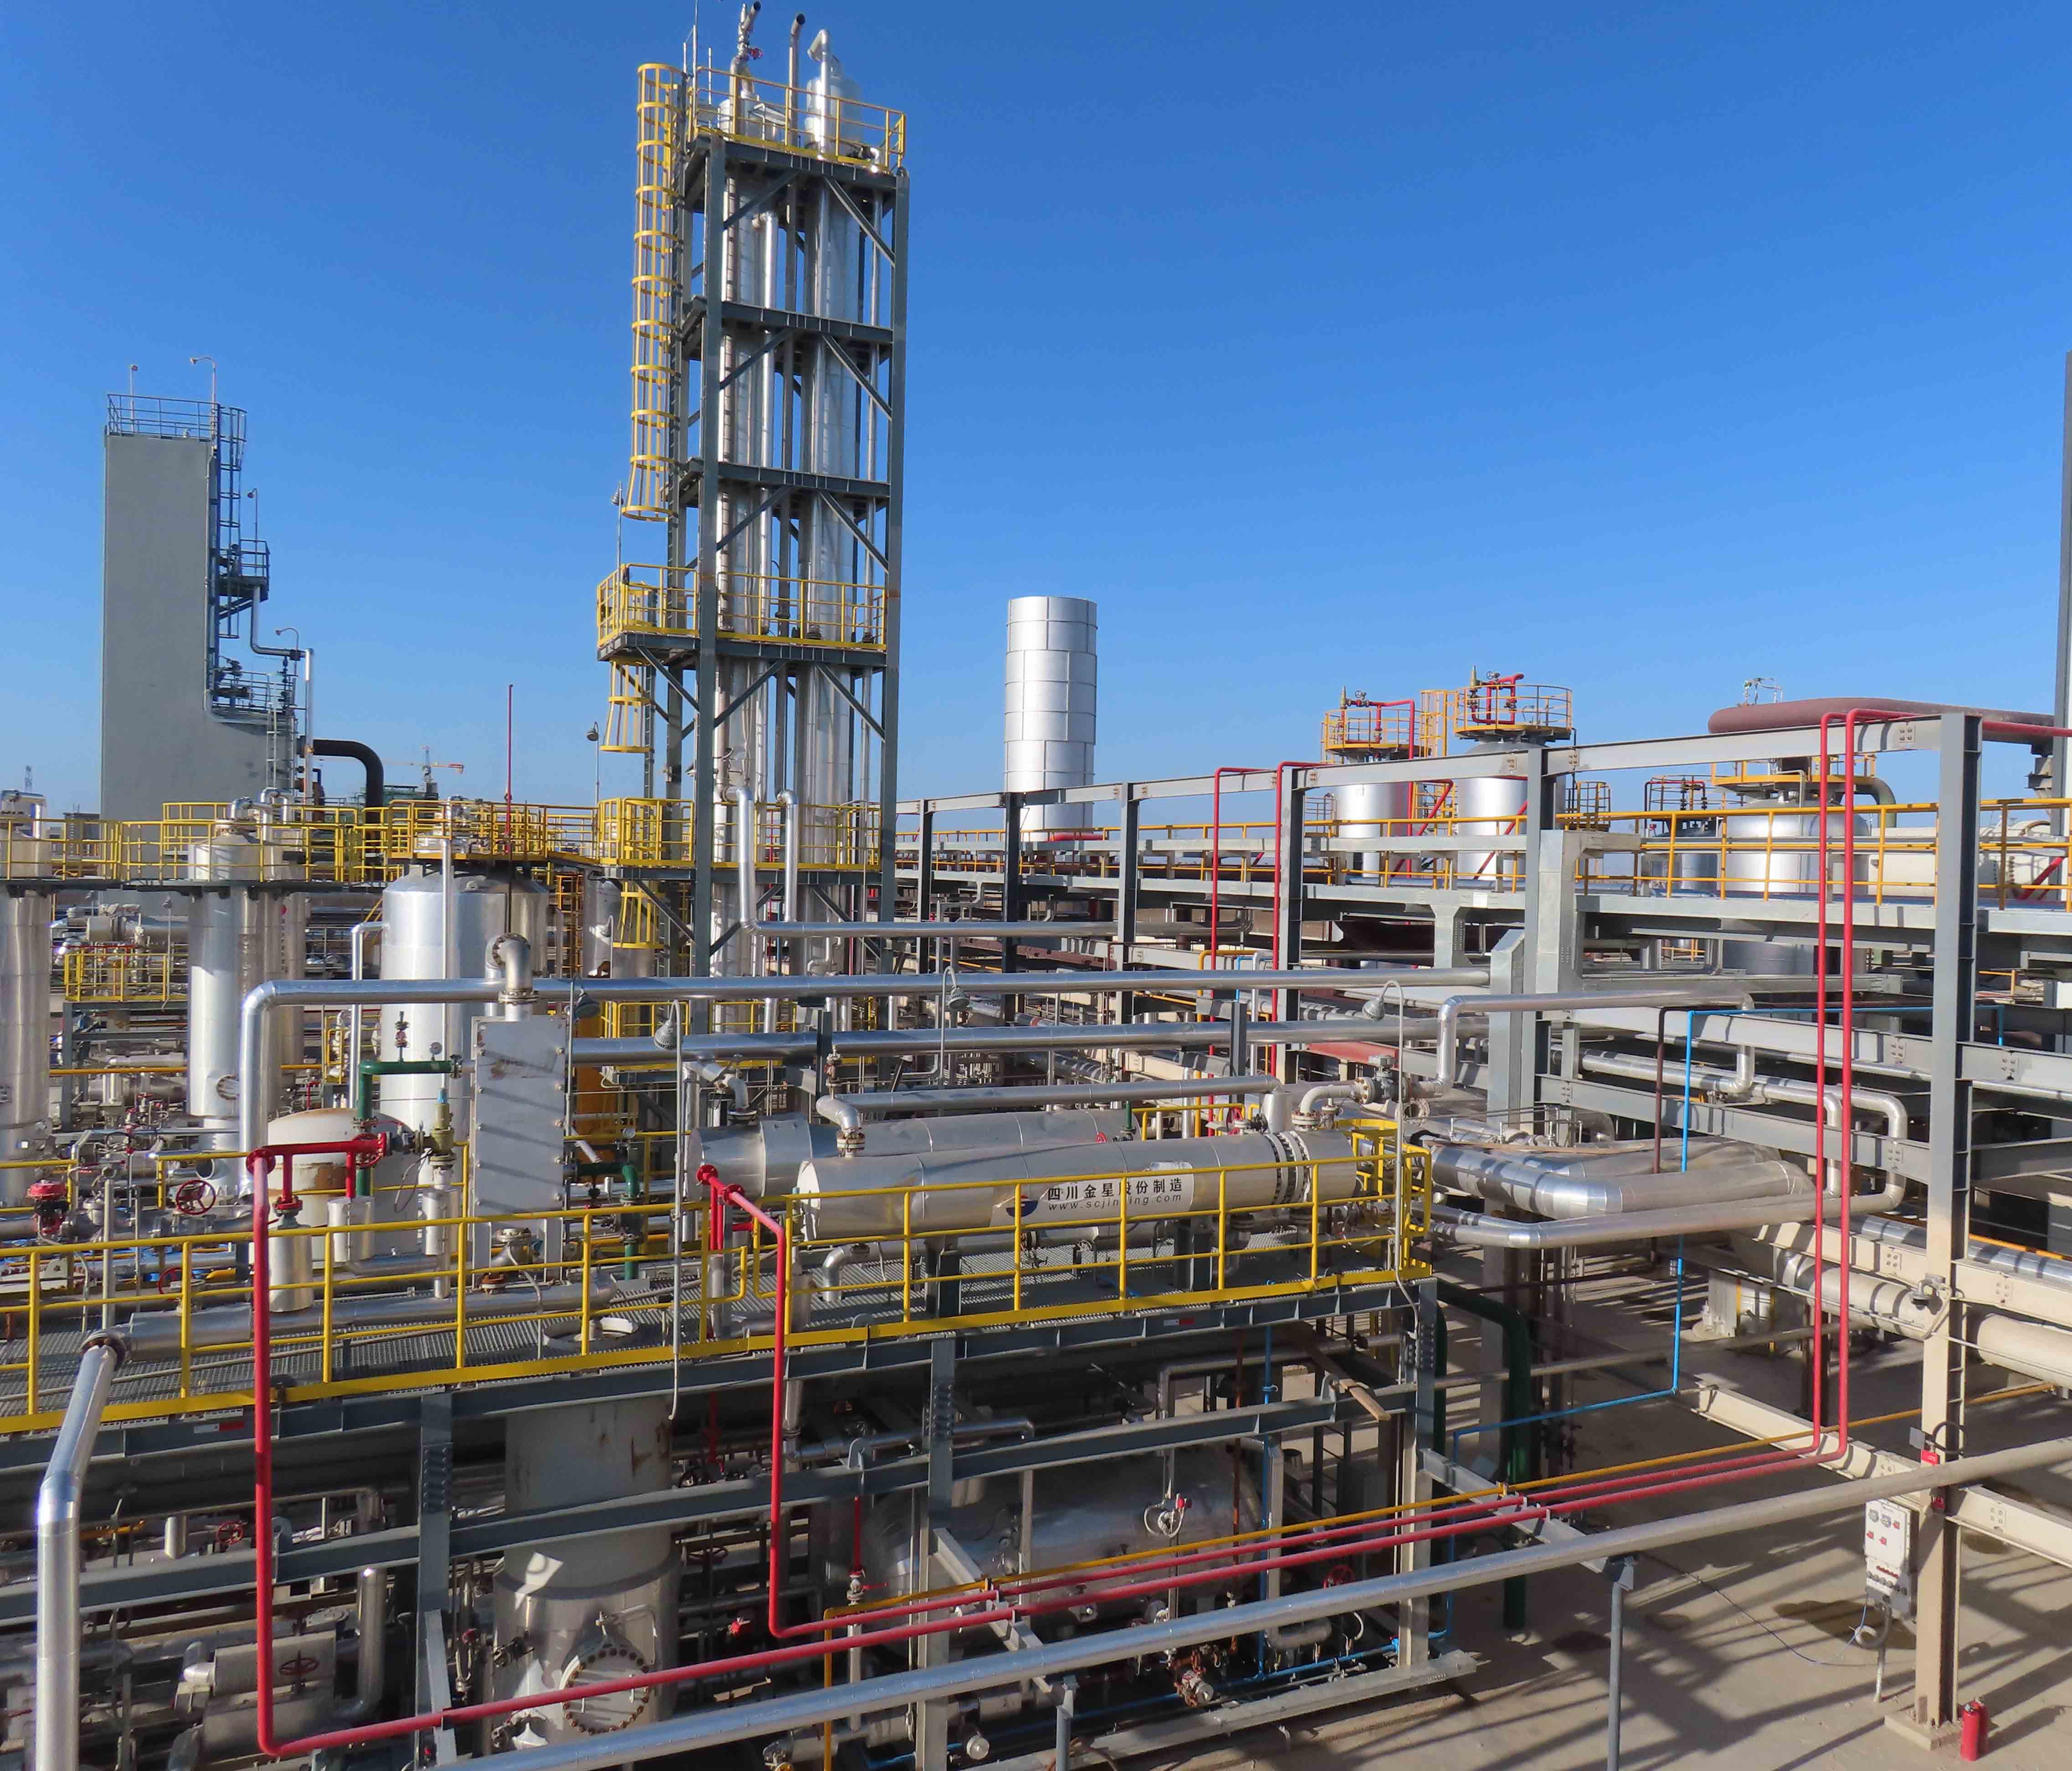 एलएनजी प्रक्रिया प्रौद्योगिकी ने प्राकृतिक गैस प्रसंस्करण उद्योग में महत्वपूर्ण प्रगति की है